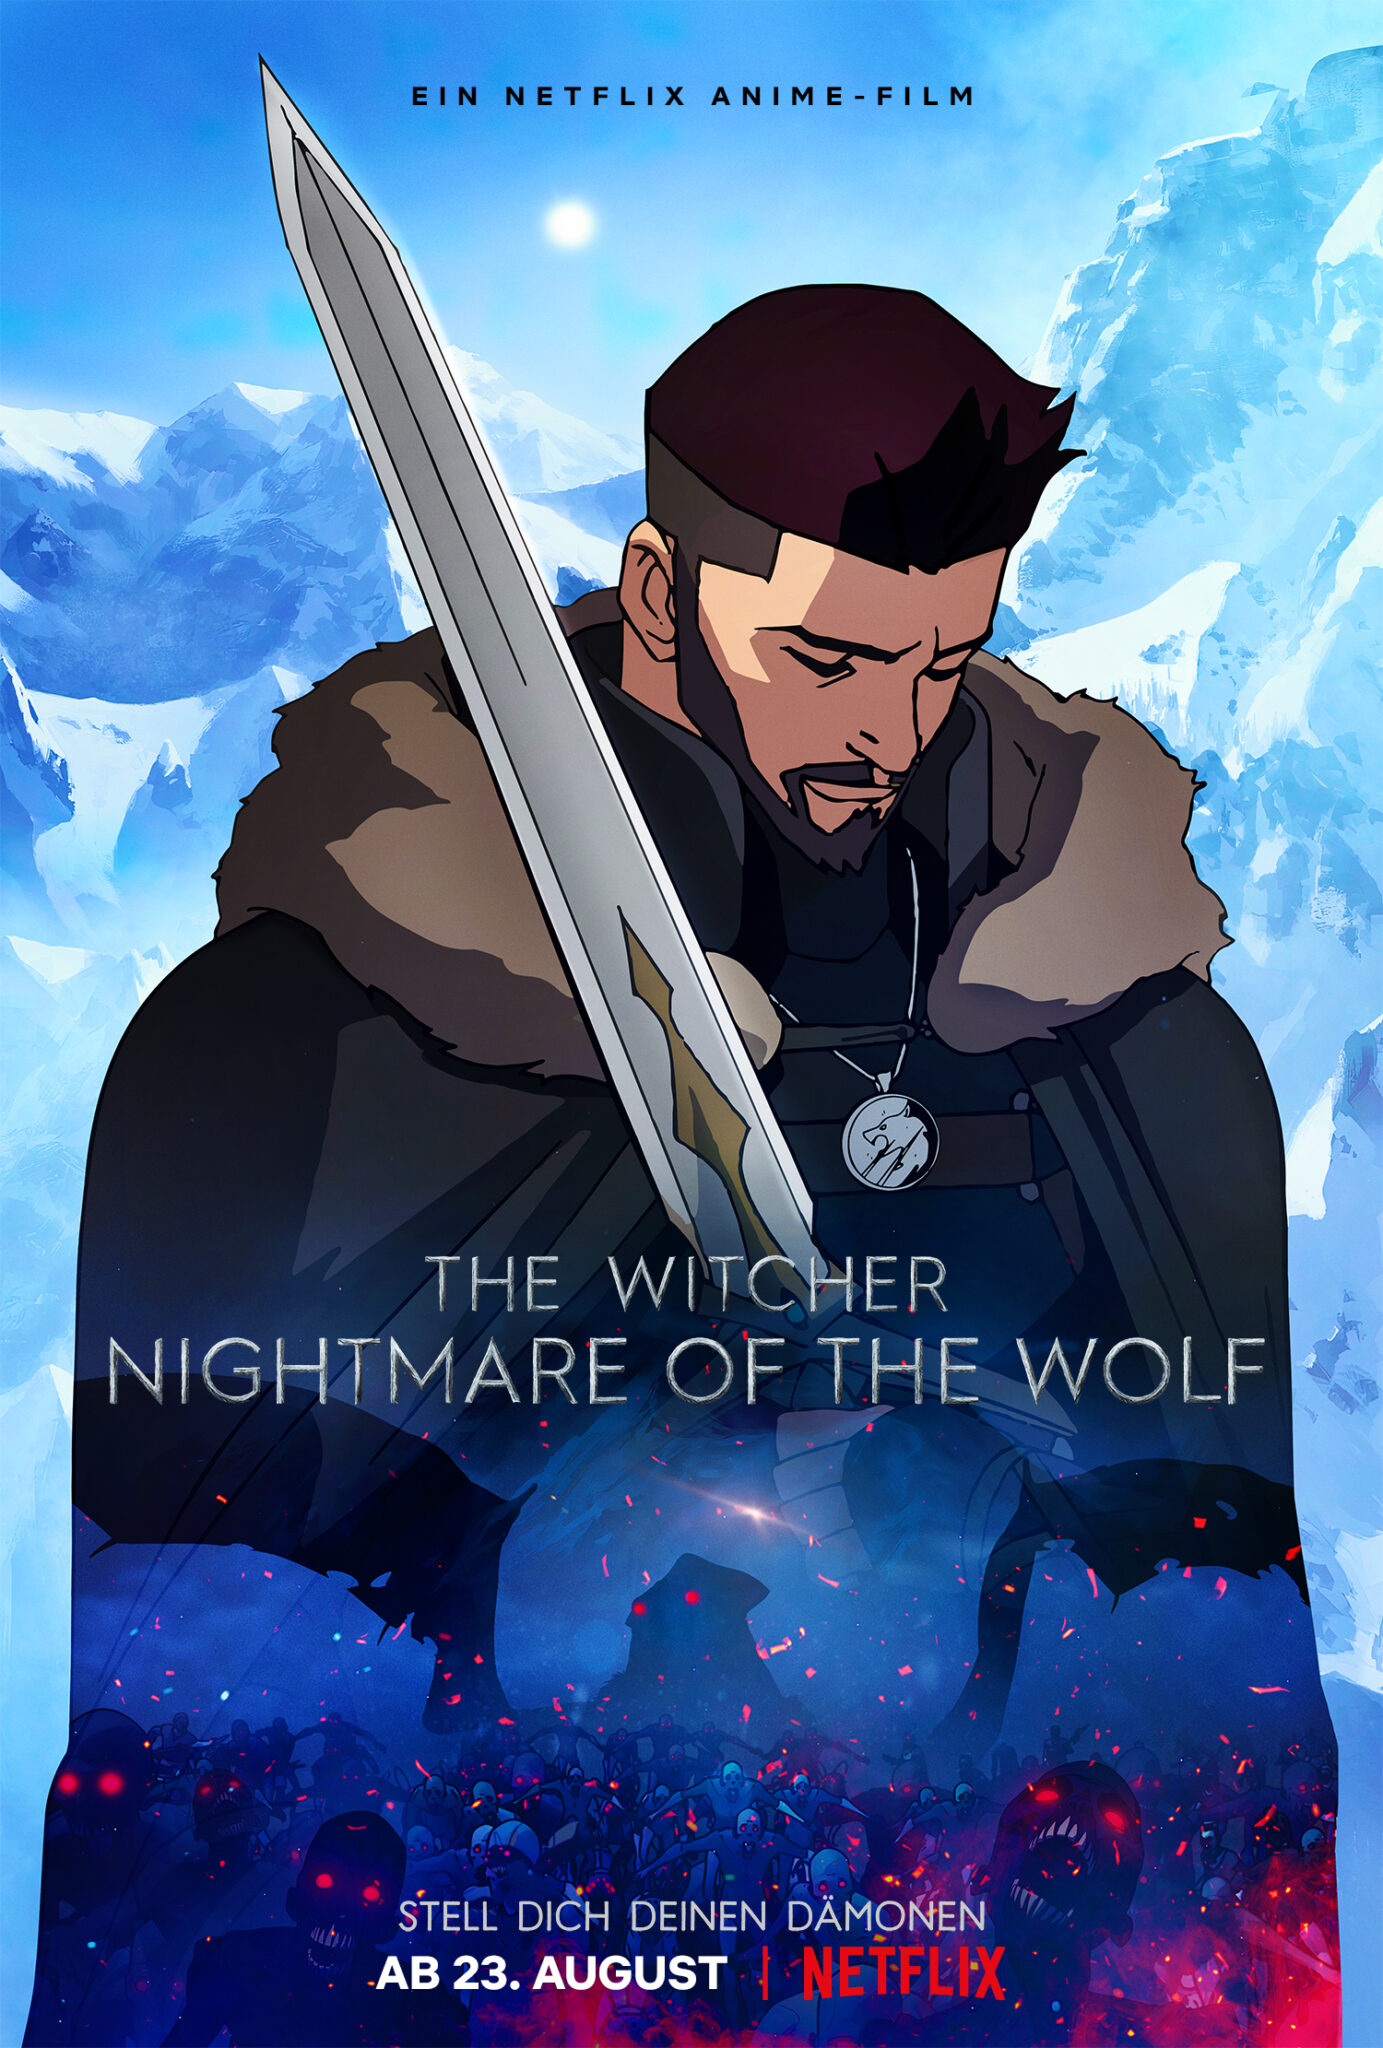 Vesemir steht vor einer eisigen Berglandschaft, mit seinem Schwert auf die Schulter gelehnt - The Witcher: Nightmare of the Wolf